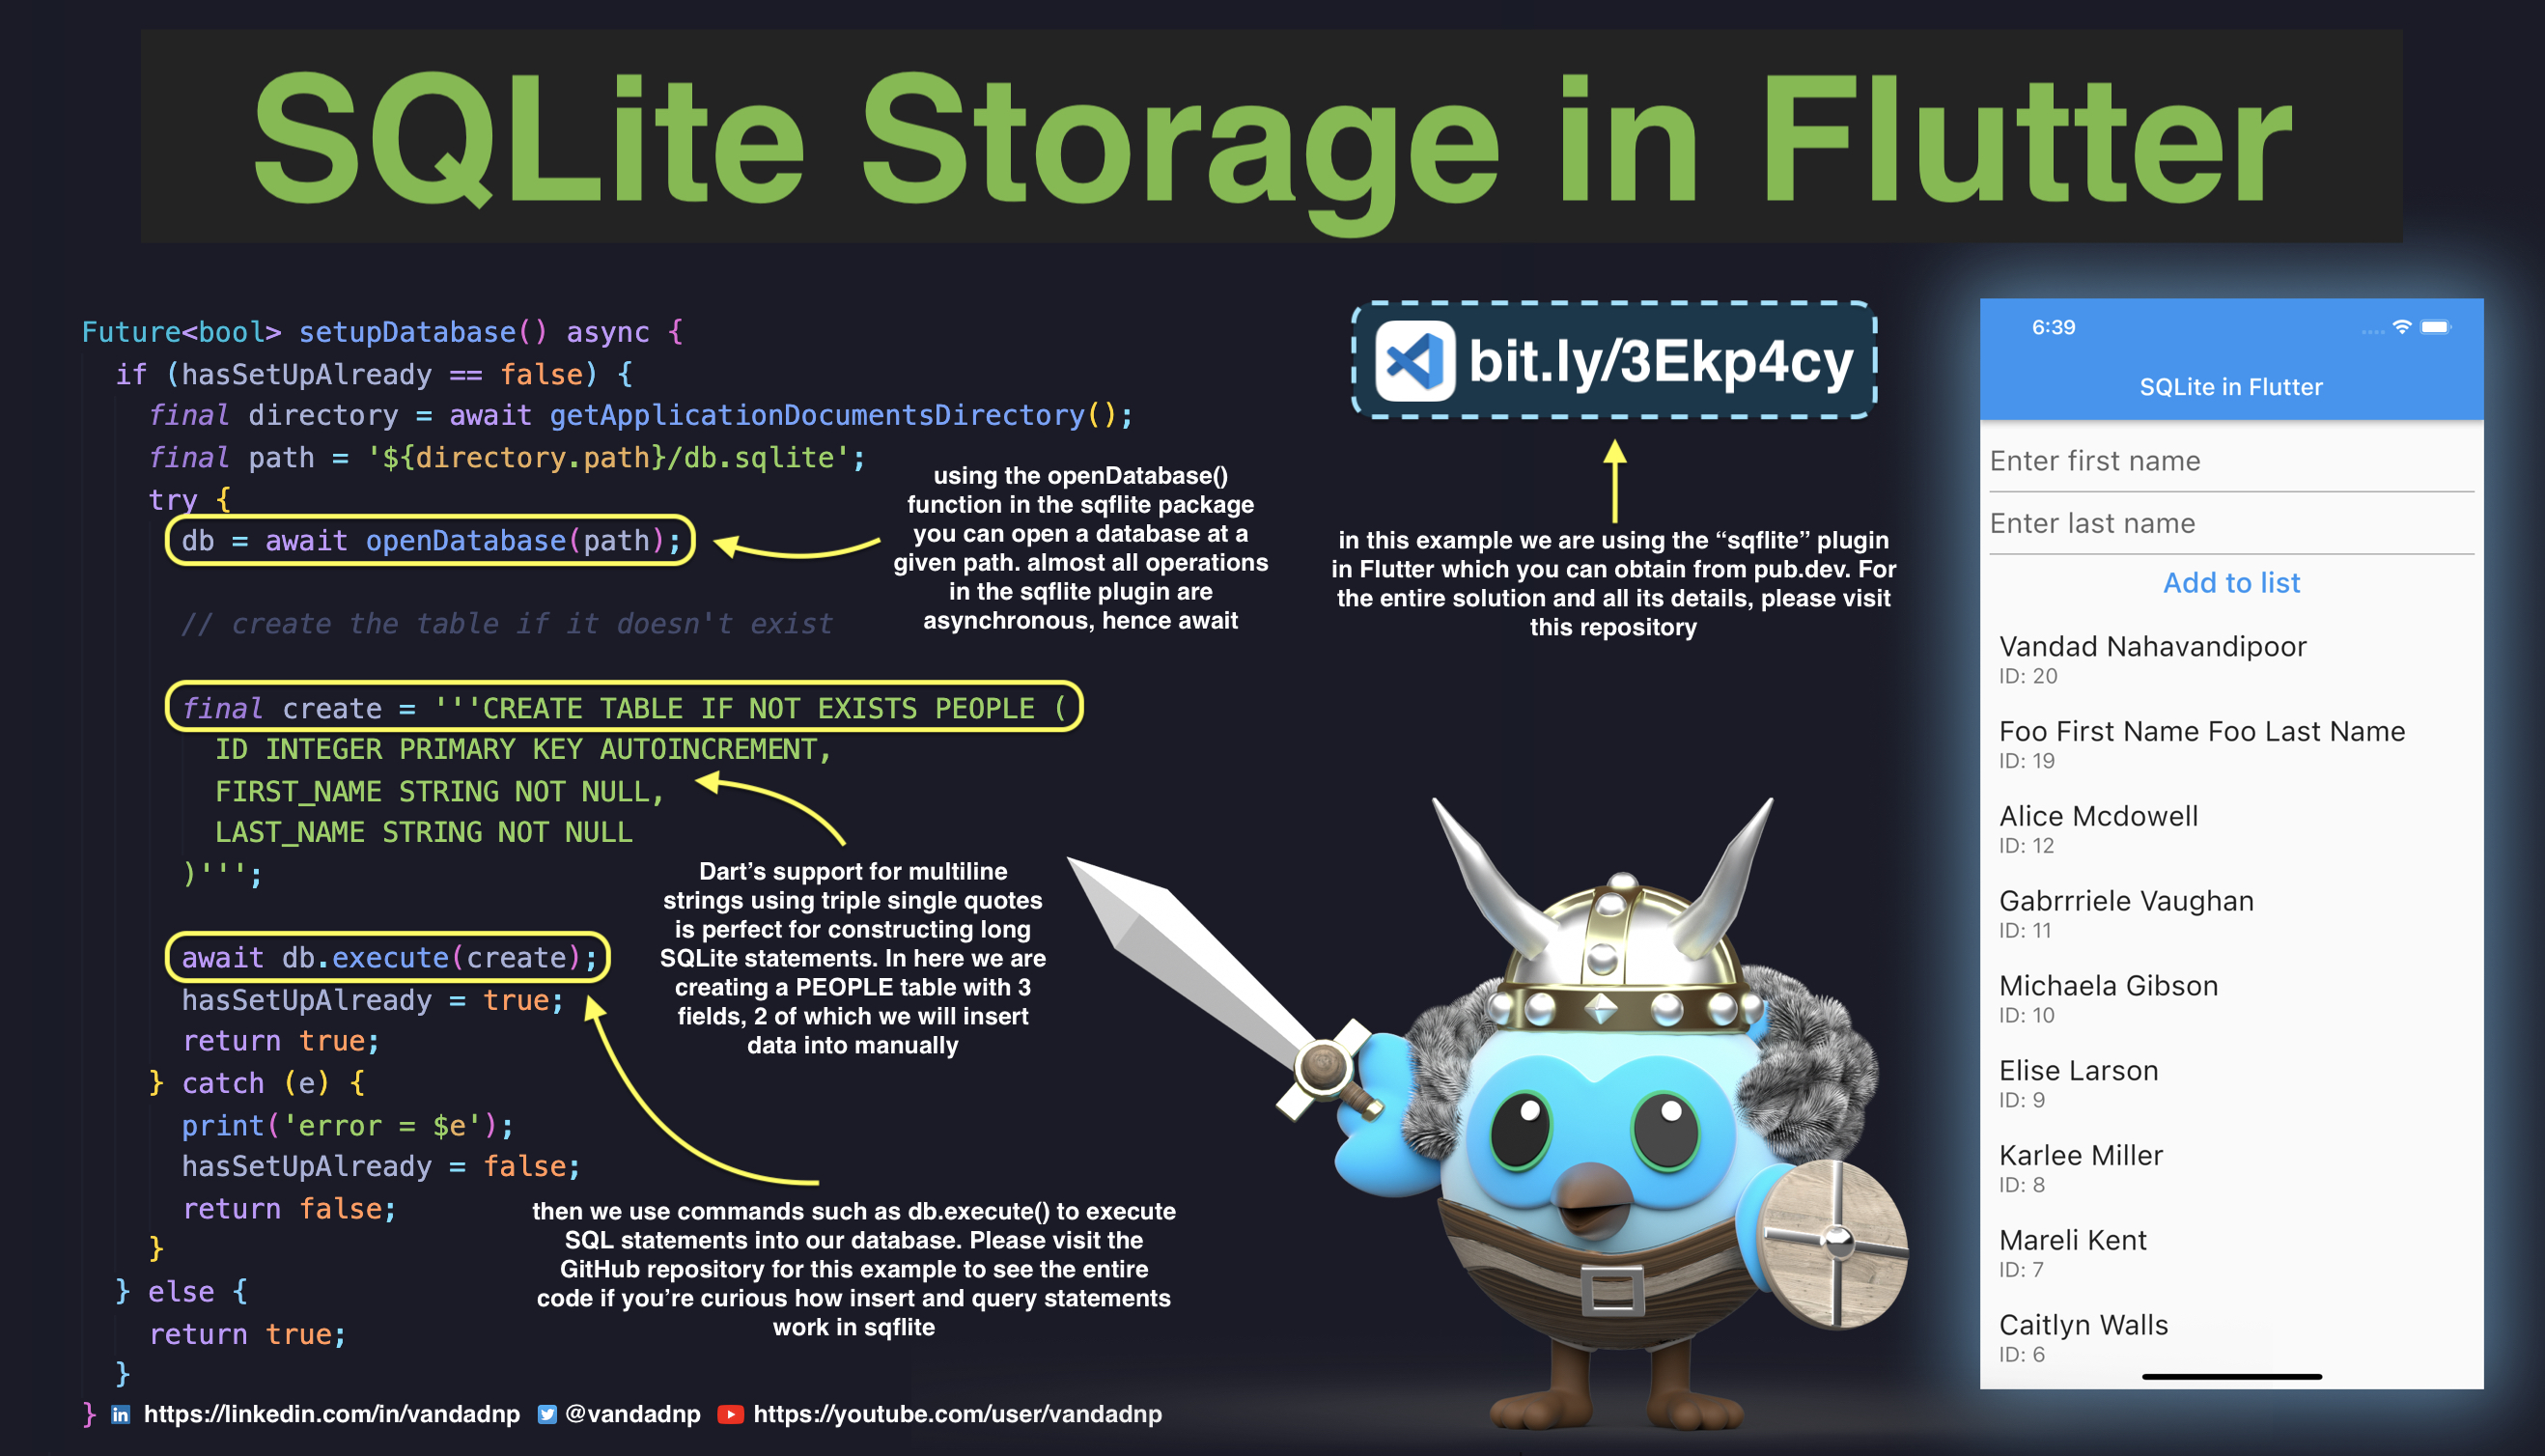 sqlite-storage-in-flutter.jpg